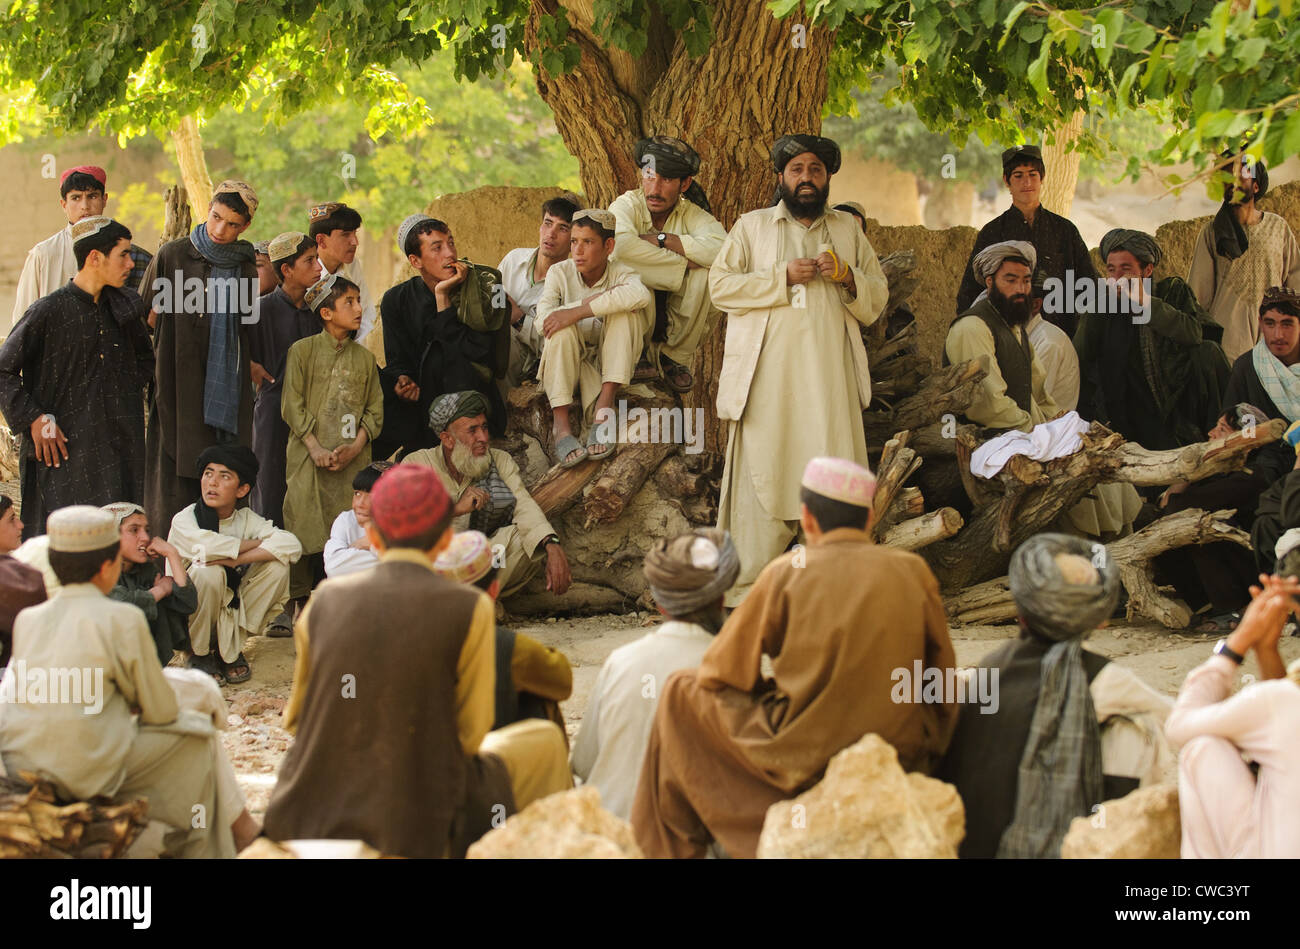 District chief Abdul Qayum centro parla di anziani afghani durante una shura nella provincia di Zabul Afghanistan. Qayum discusso Foto Stock